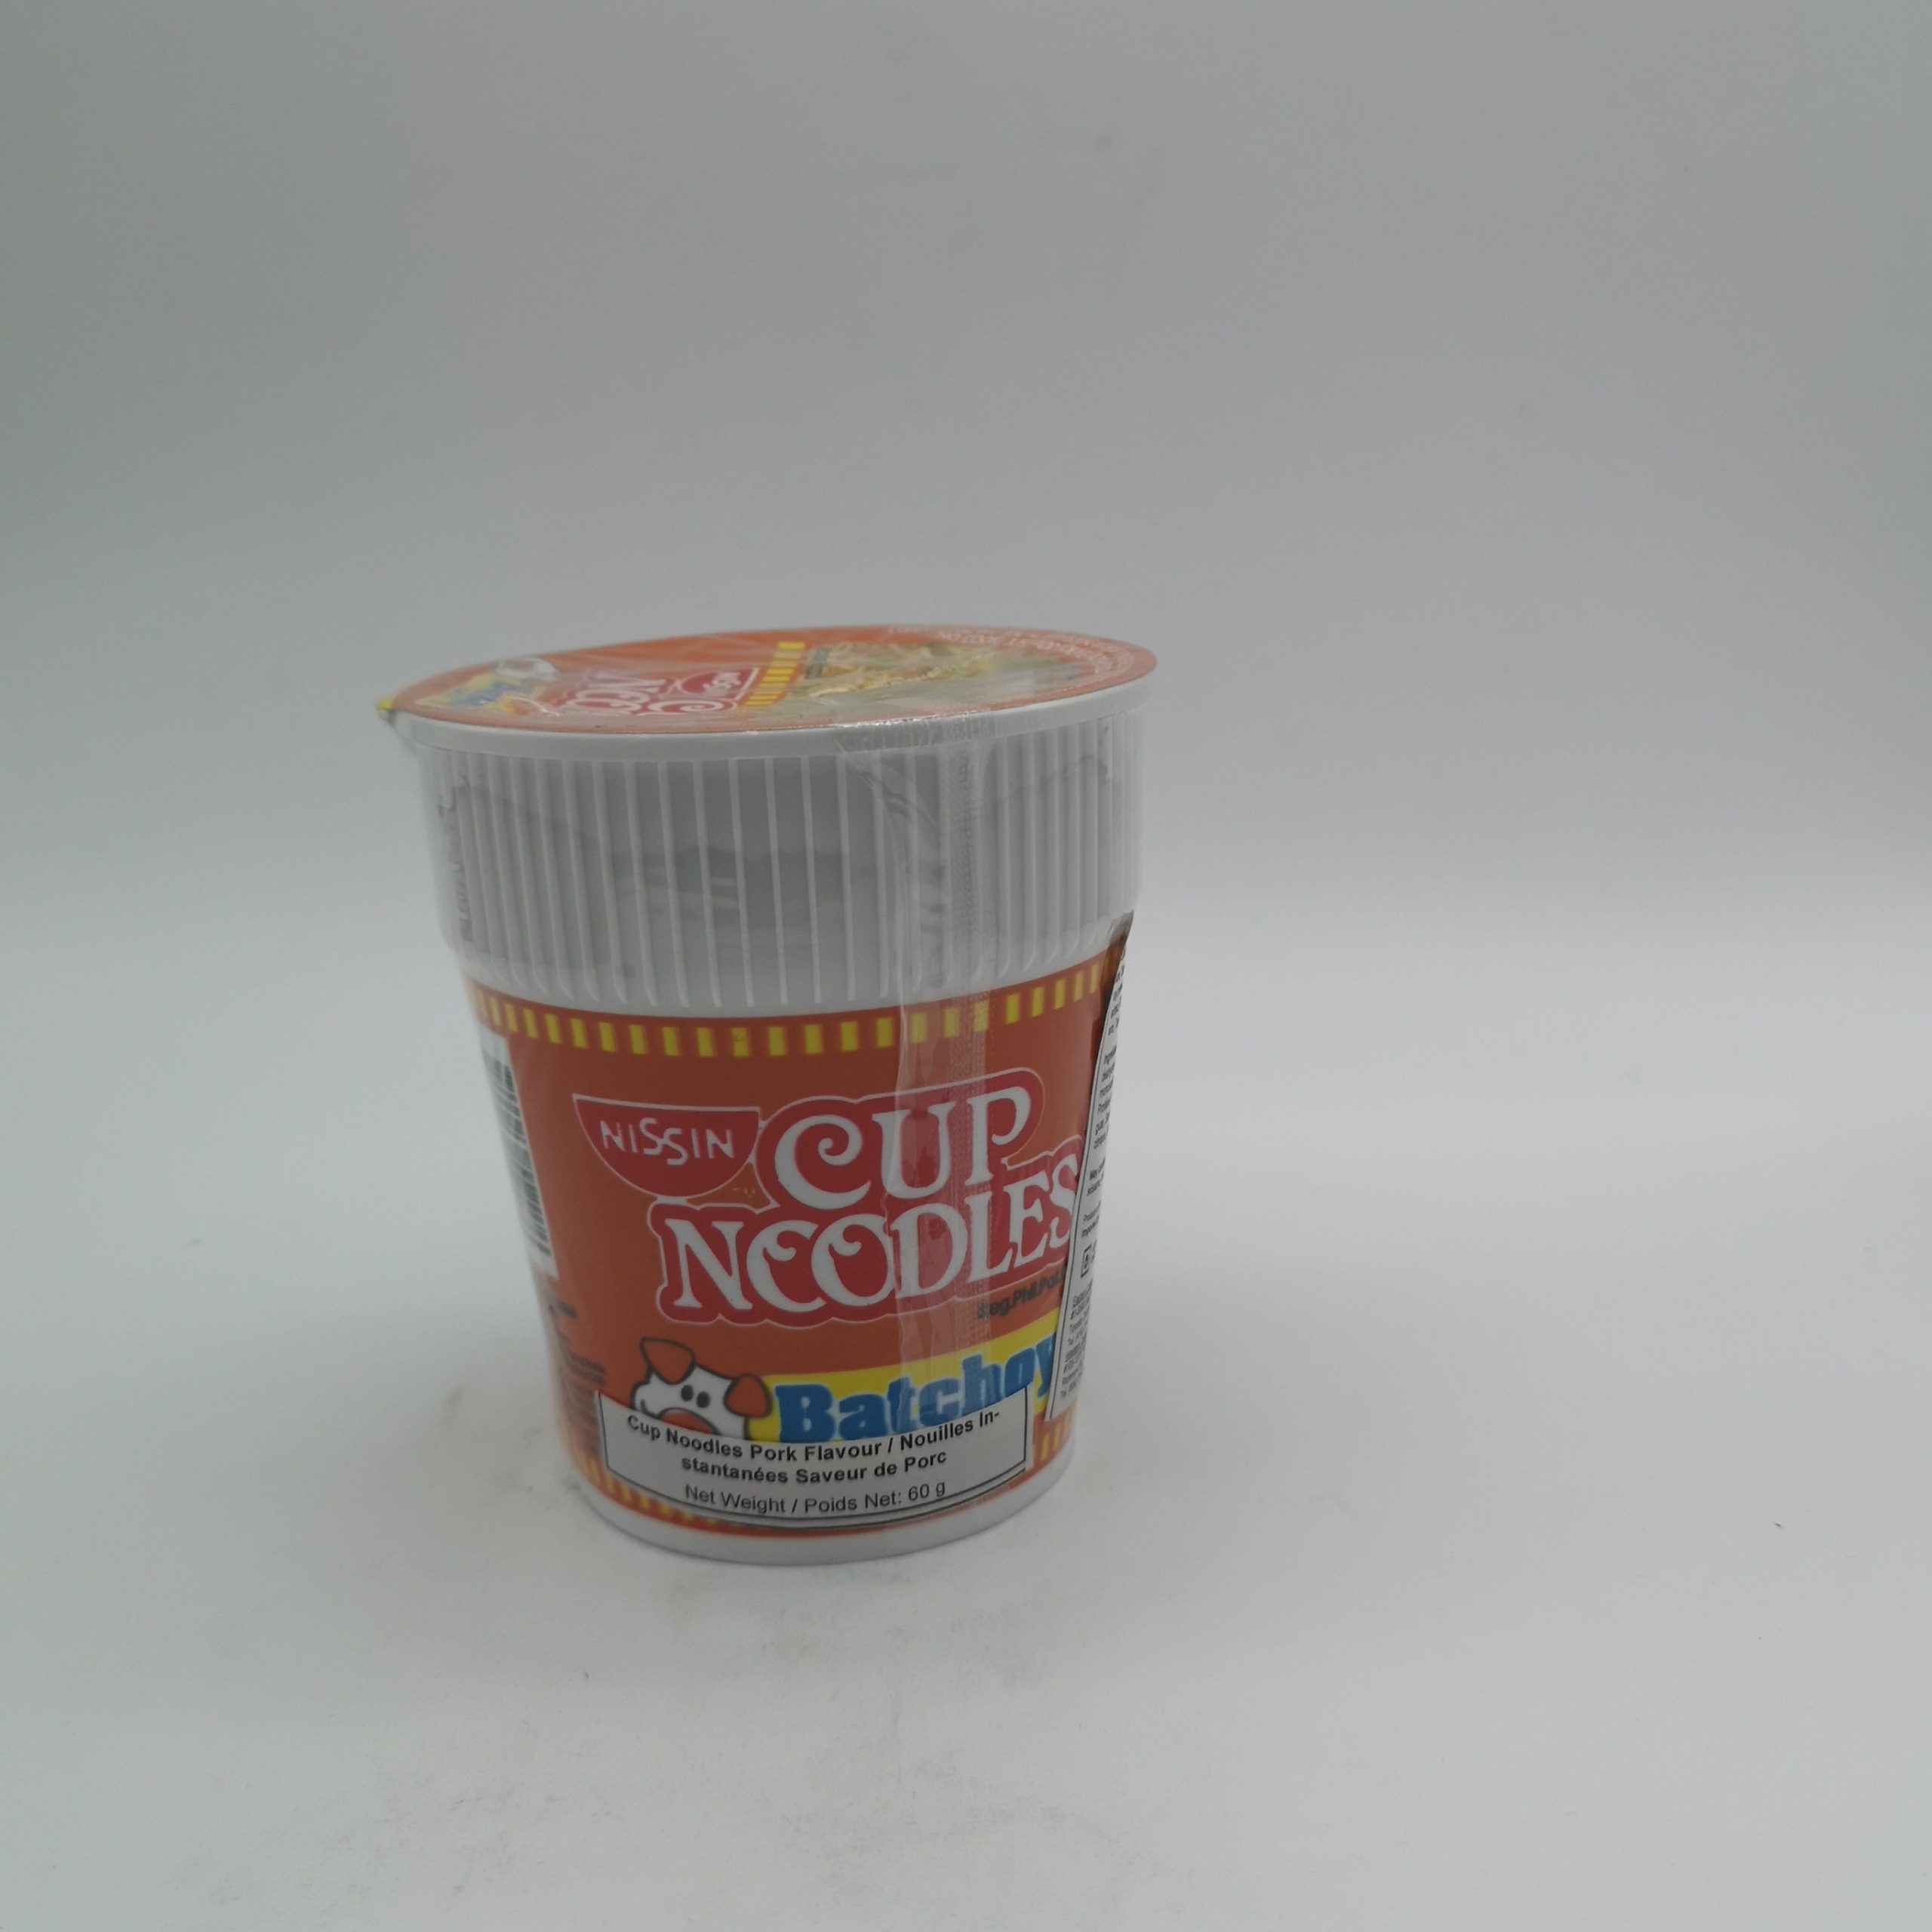 Nissin Cup Noodles Batchoy Flavor 60g Kabayan Food Mart